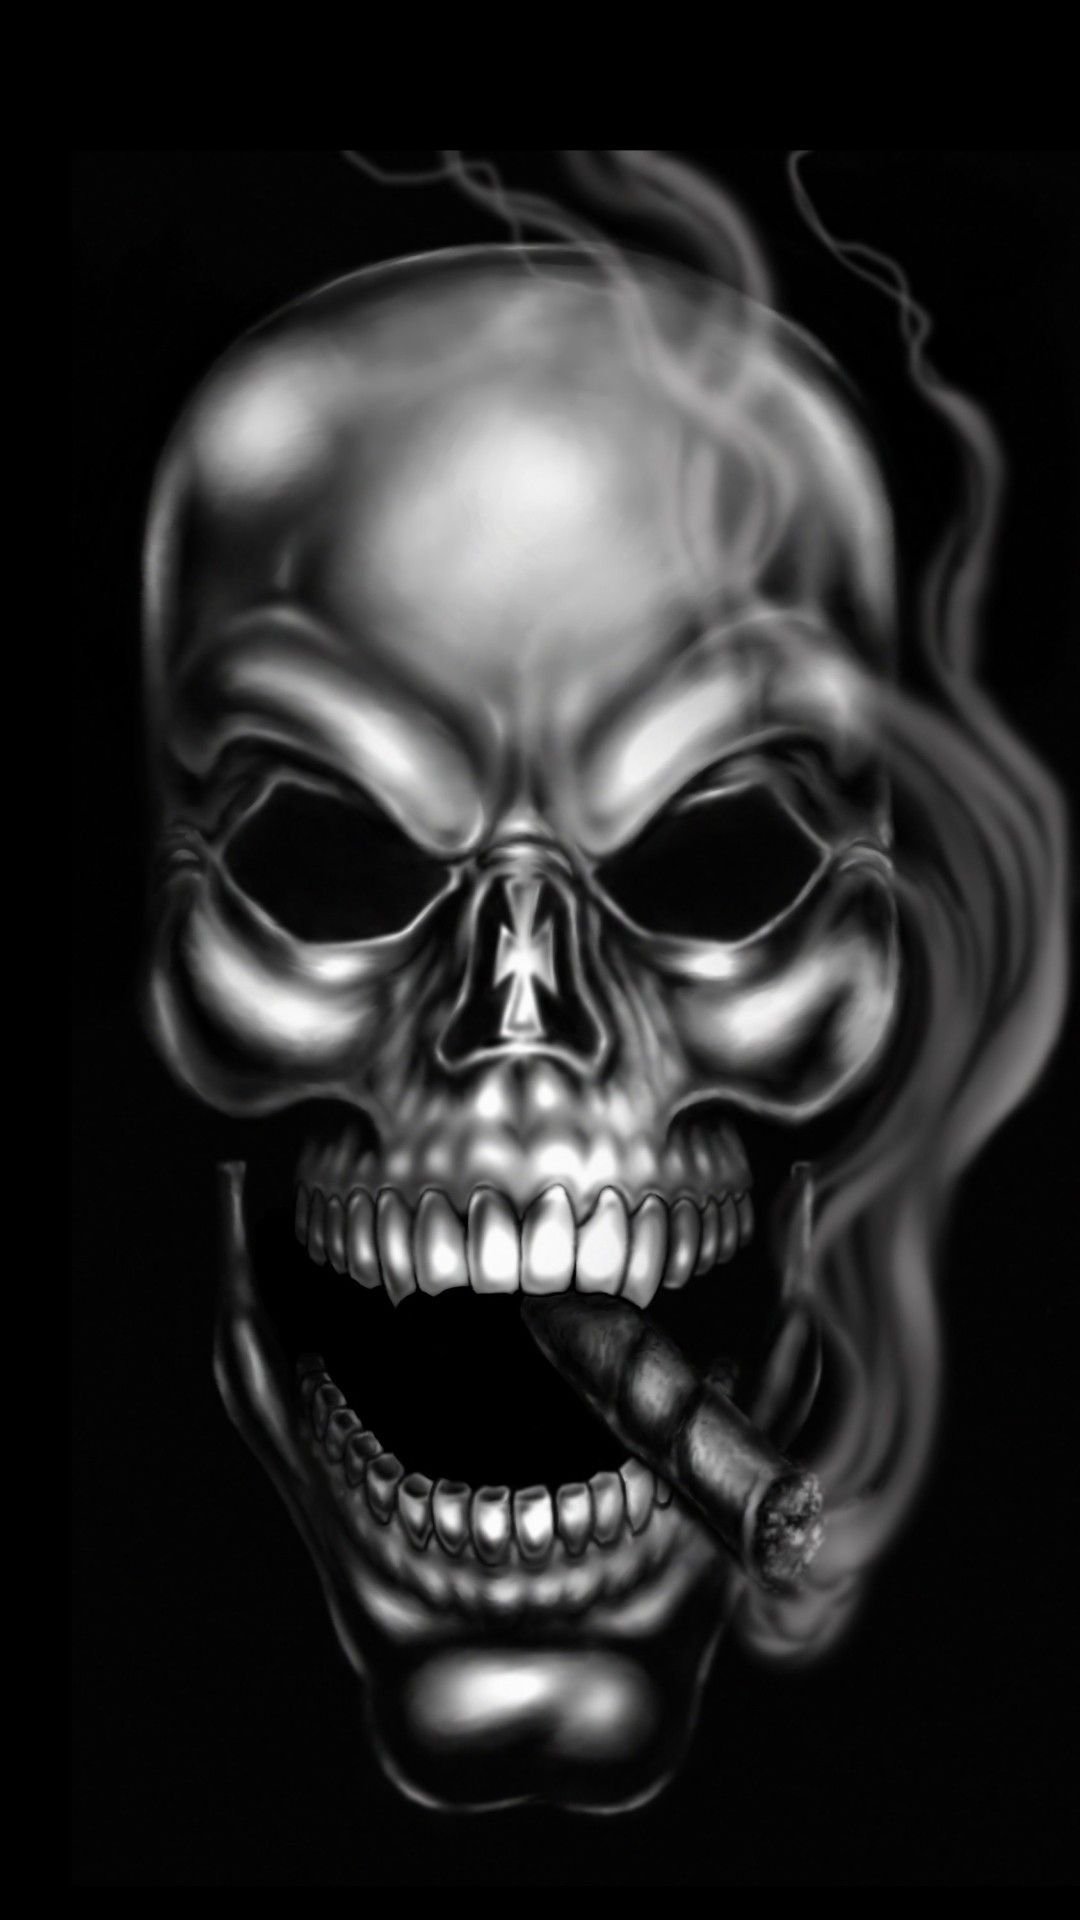 Smoking Skull - Cover Art Market